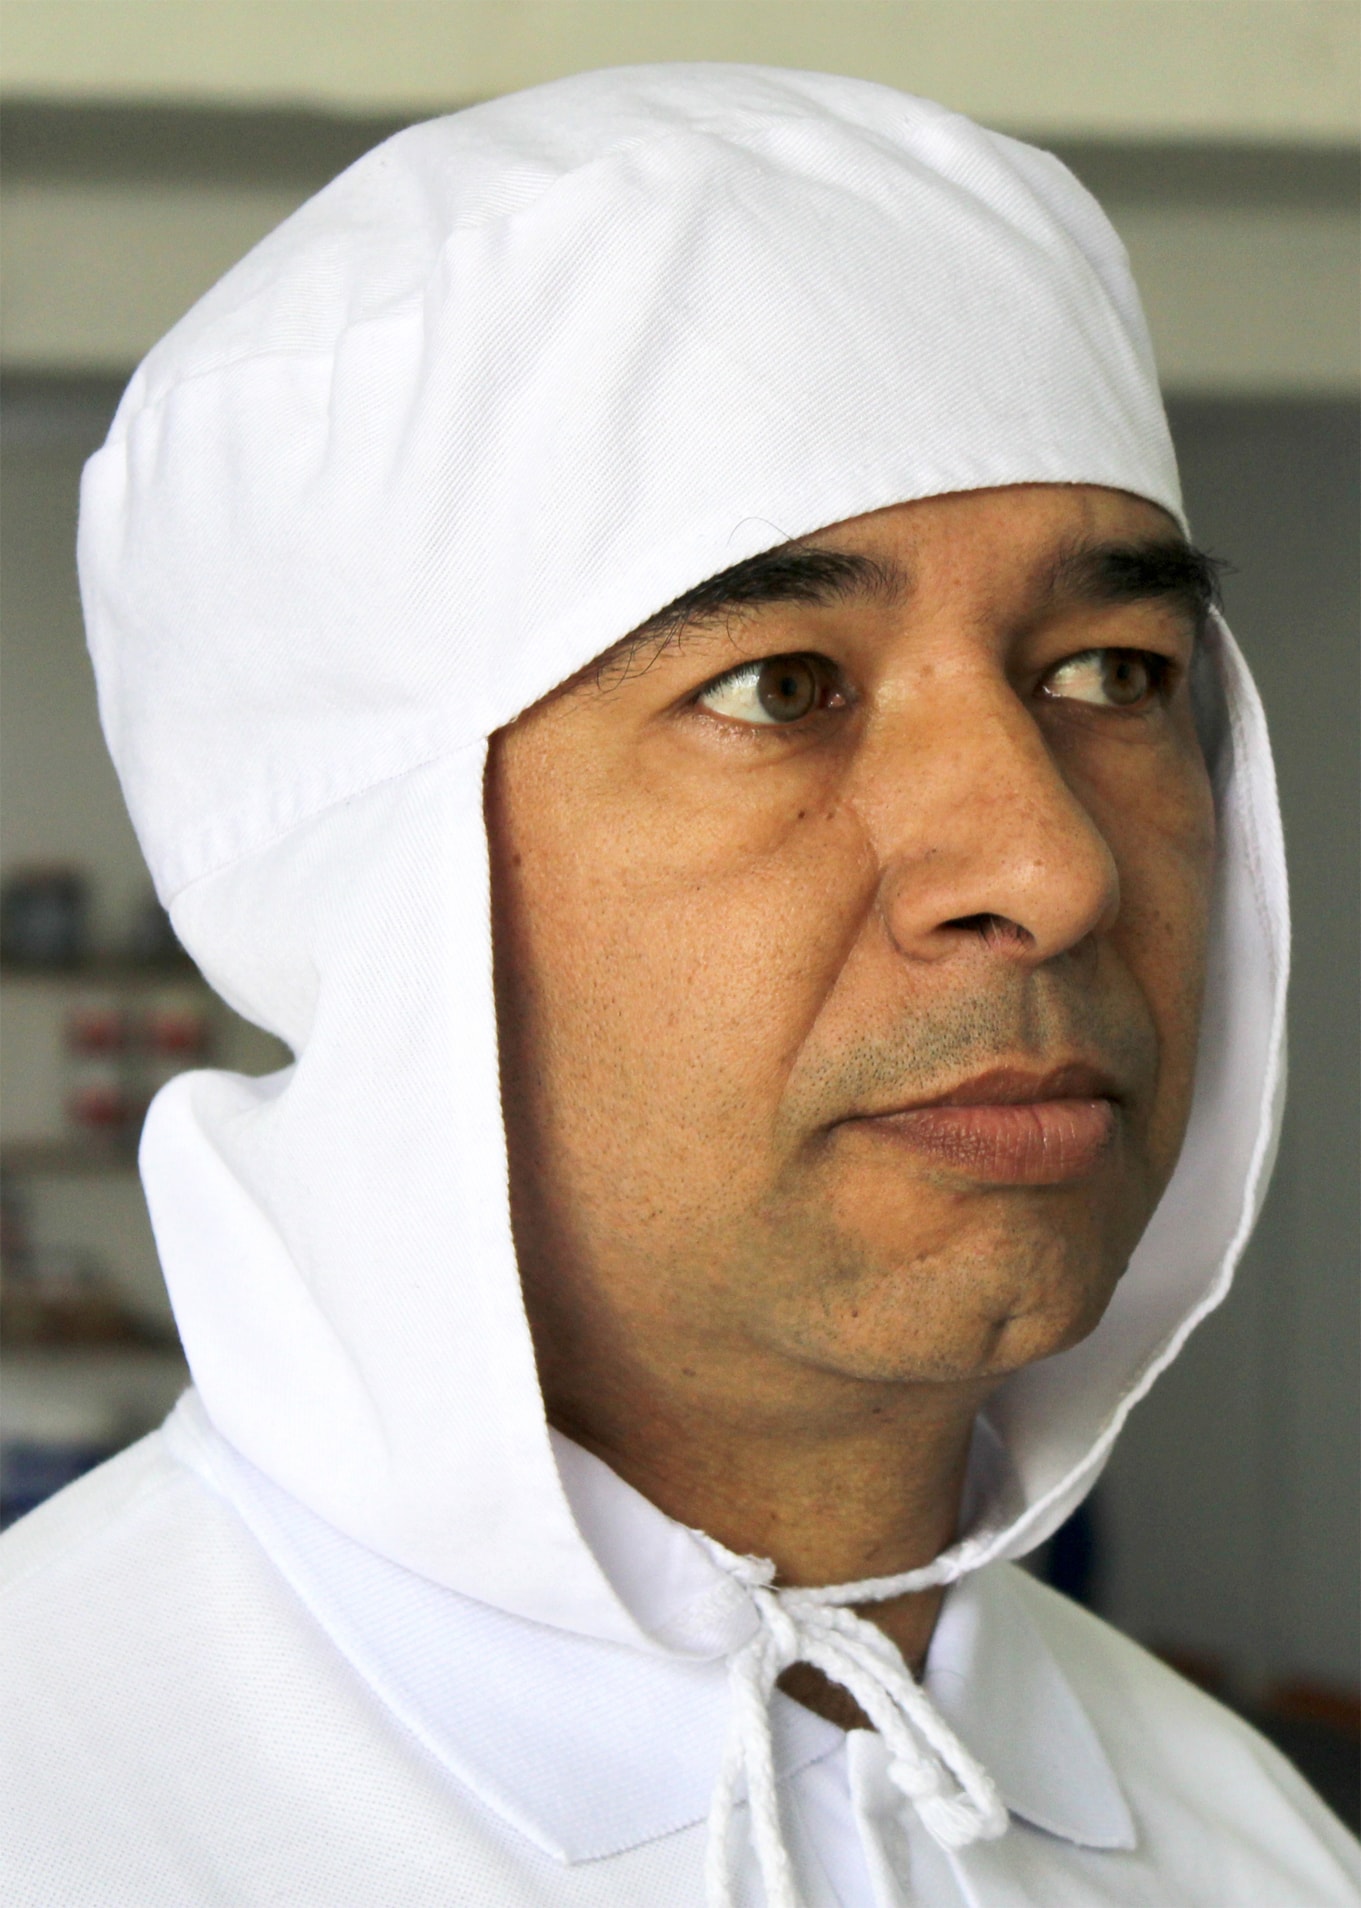 Touca árabe feita em algodão ou tecido sintético para indústria alimentícia